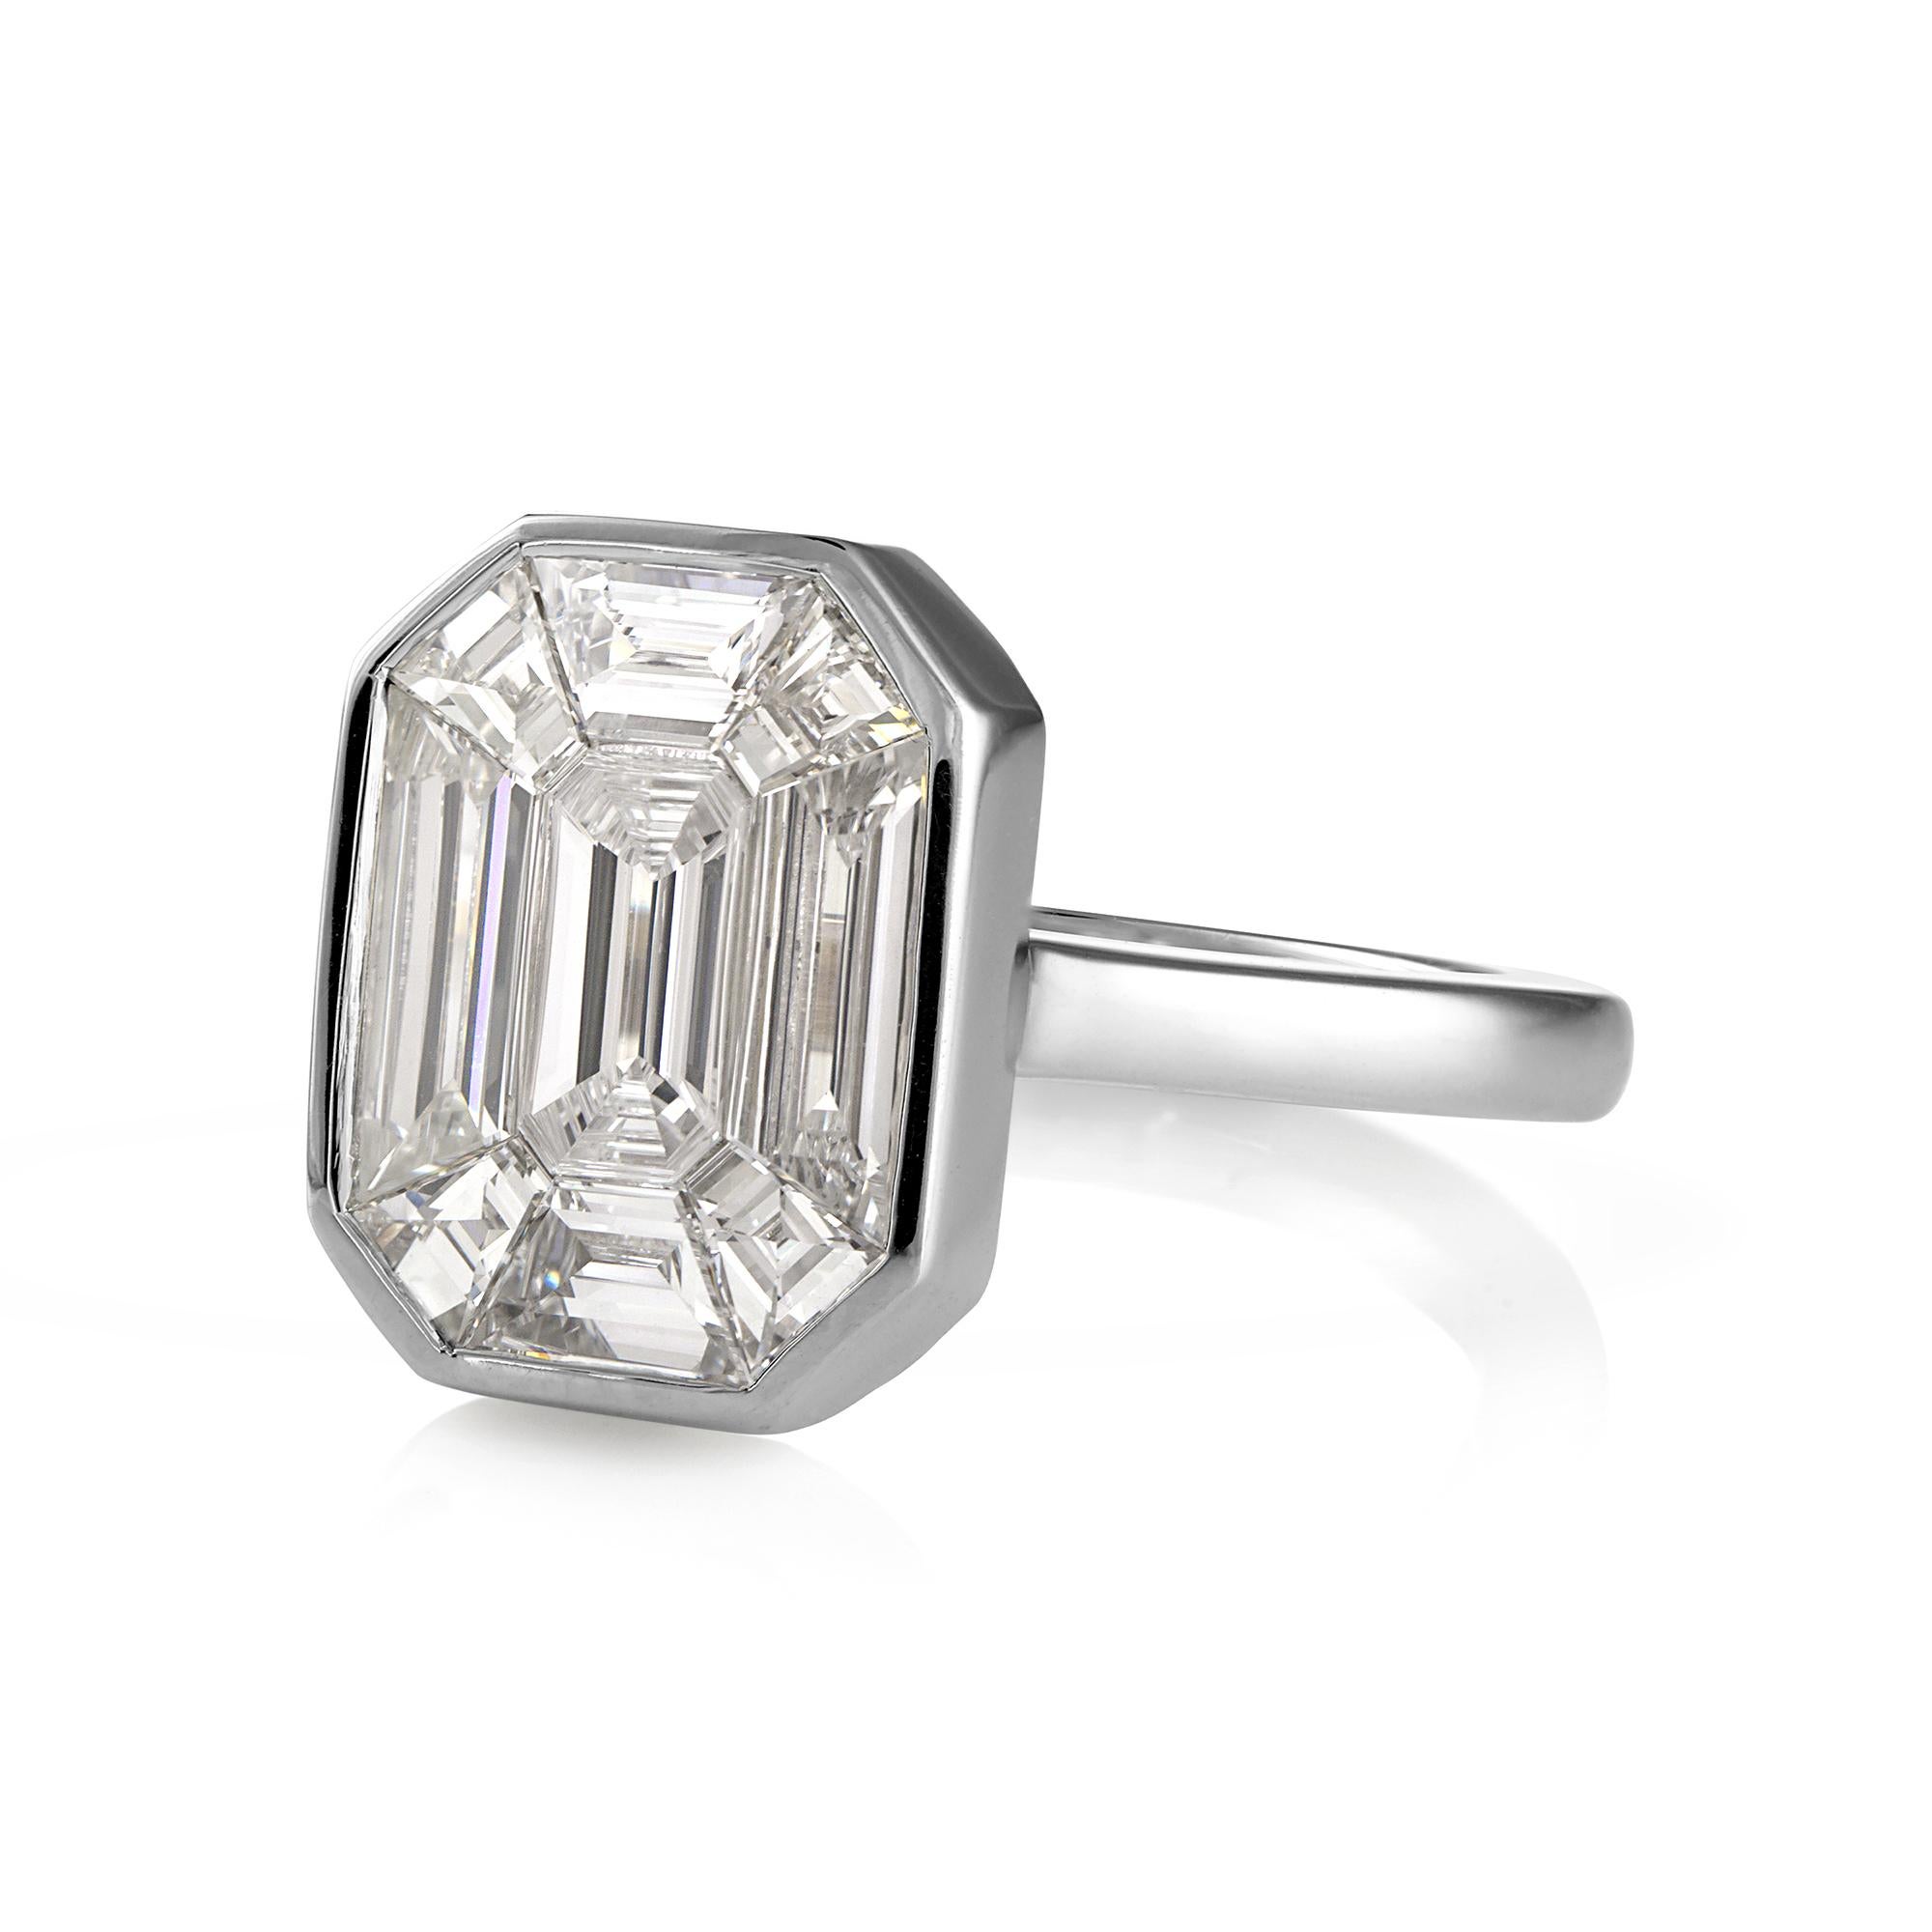 Face Up 10ct GIA Smaragd Illusion Cut Diamant Verlobung Jahrestag Platin Ring

Haben Sie jemals von einem 10-karätigen Diamanten geträumt? Nicht irgendein 10ct Diamant, sondern ein Diamant der Farbe D!!! Die Frage kann nun beantwortet werden. Dieser